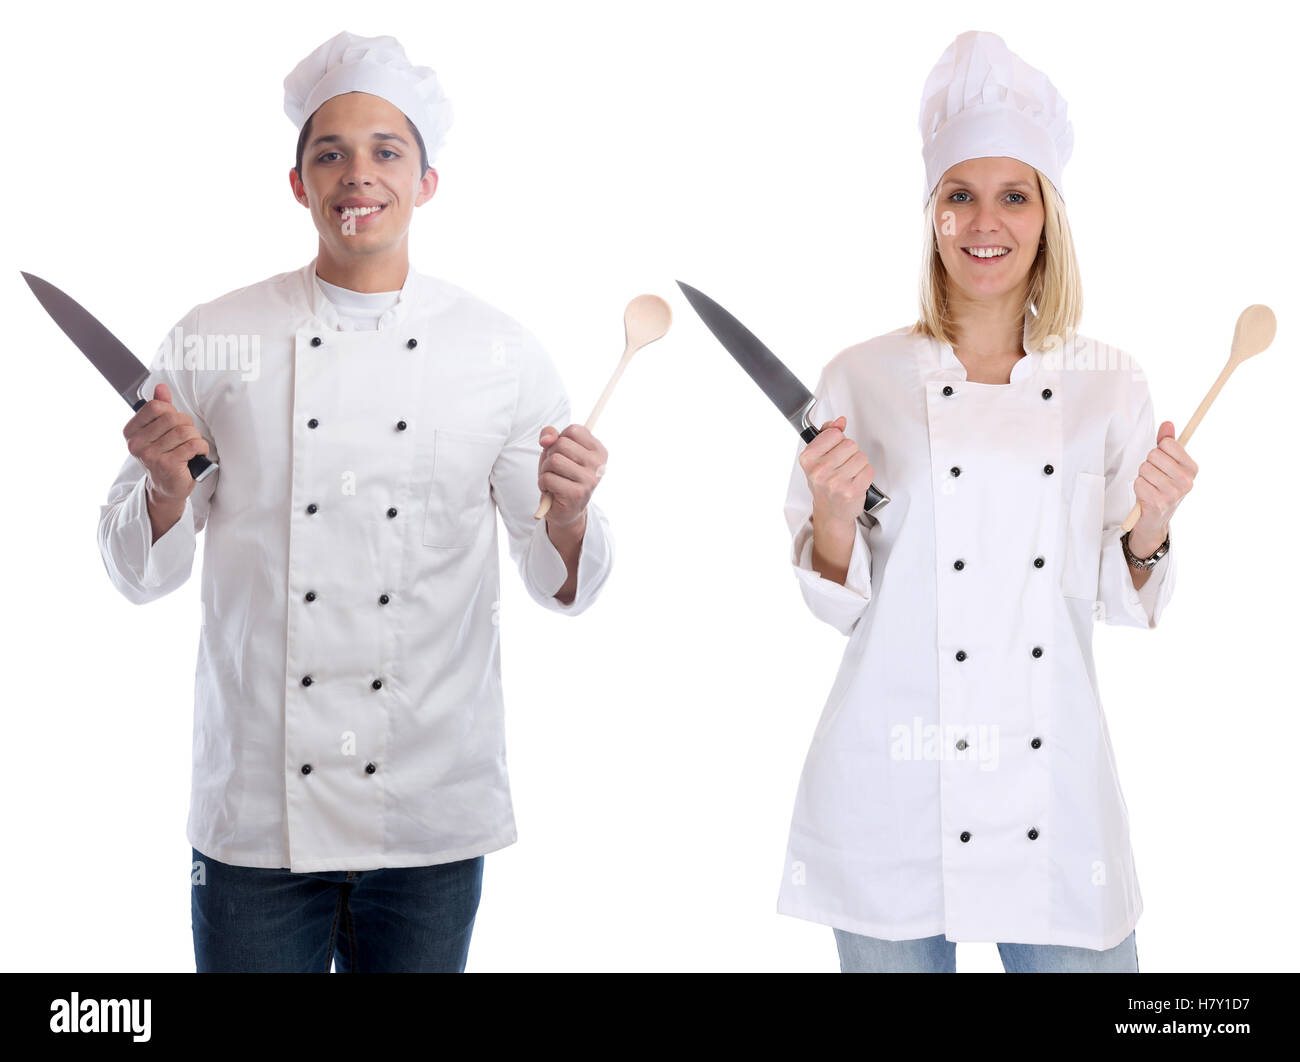 Apprenti cuisinier cuisiniers stagiaires stagiaire avec cuisine Cuillère couteau jeunes emploi isolé sur fond blanc Banque D'Images